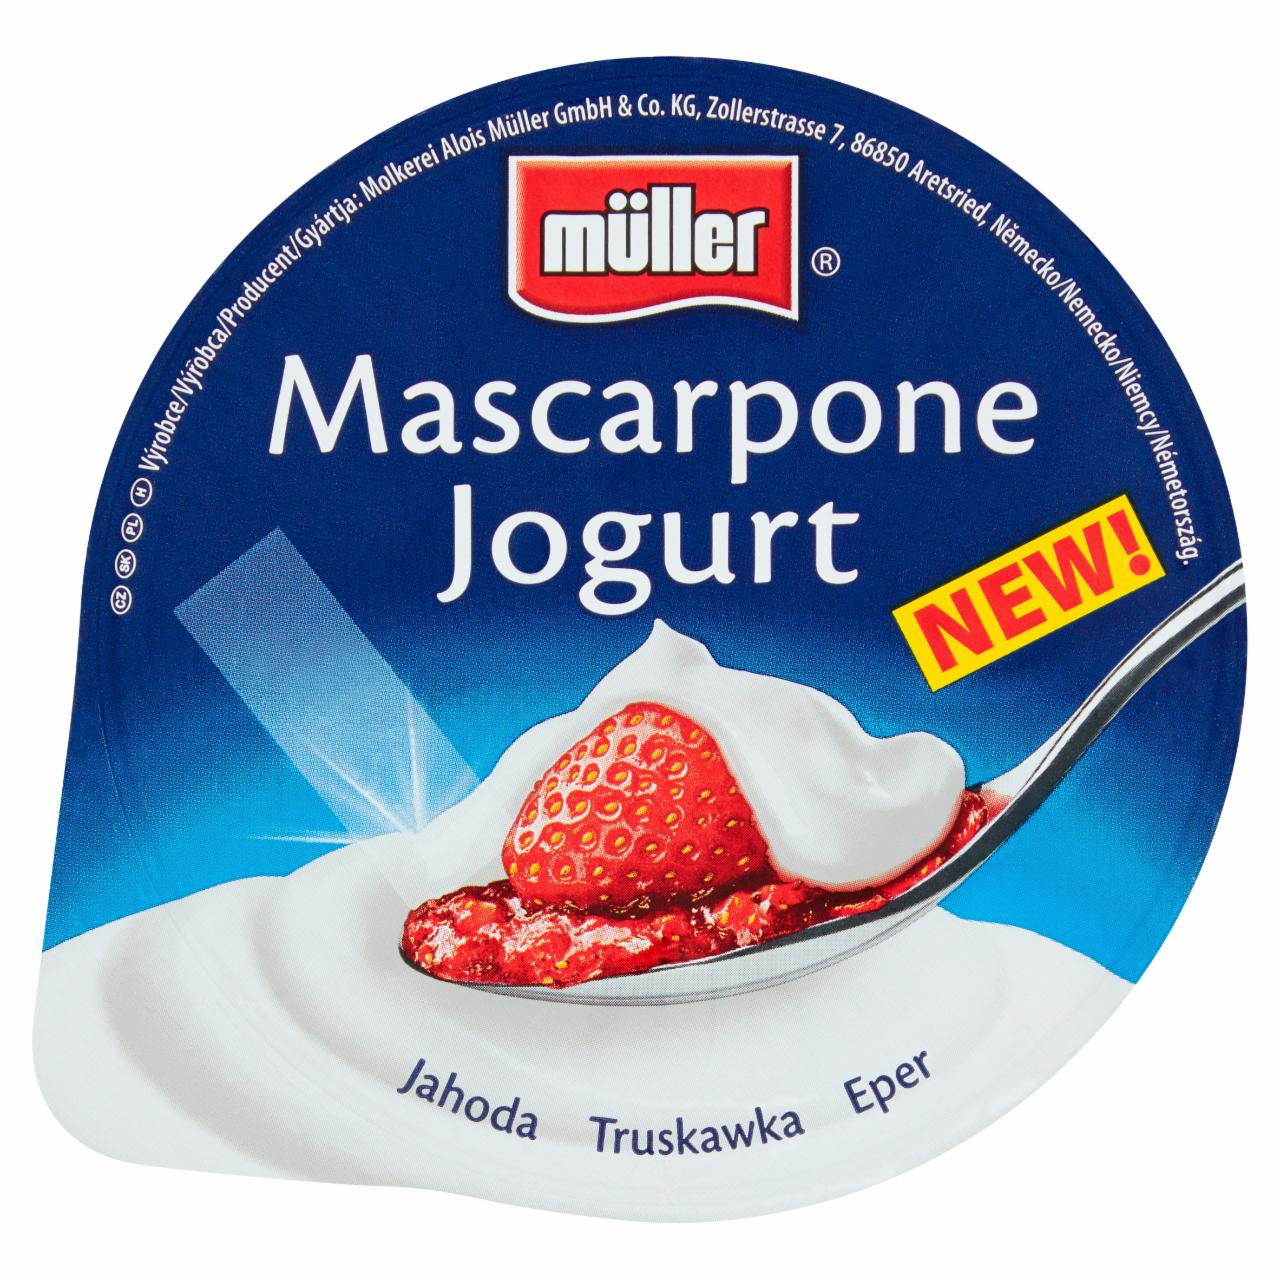 Zdjęcia - Müller Mascarpone Jogurt truskawka 130 g